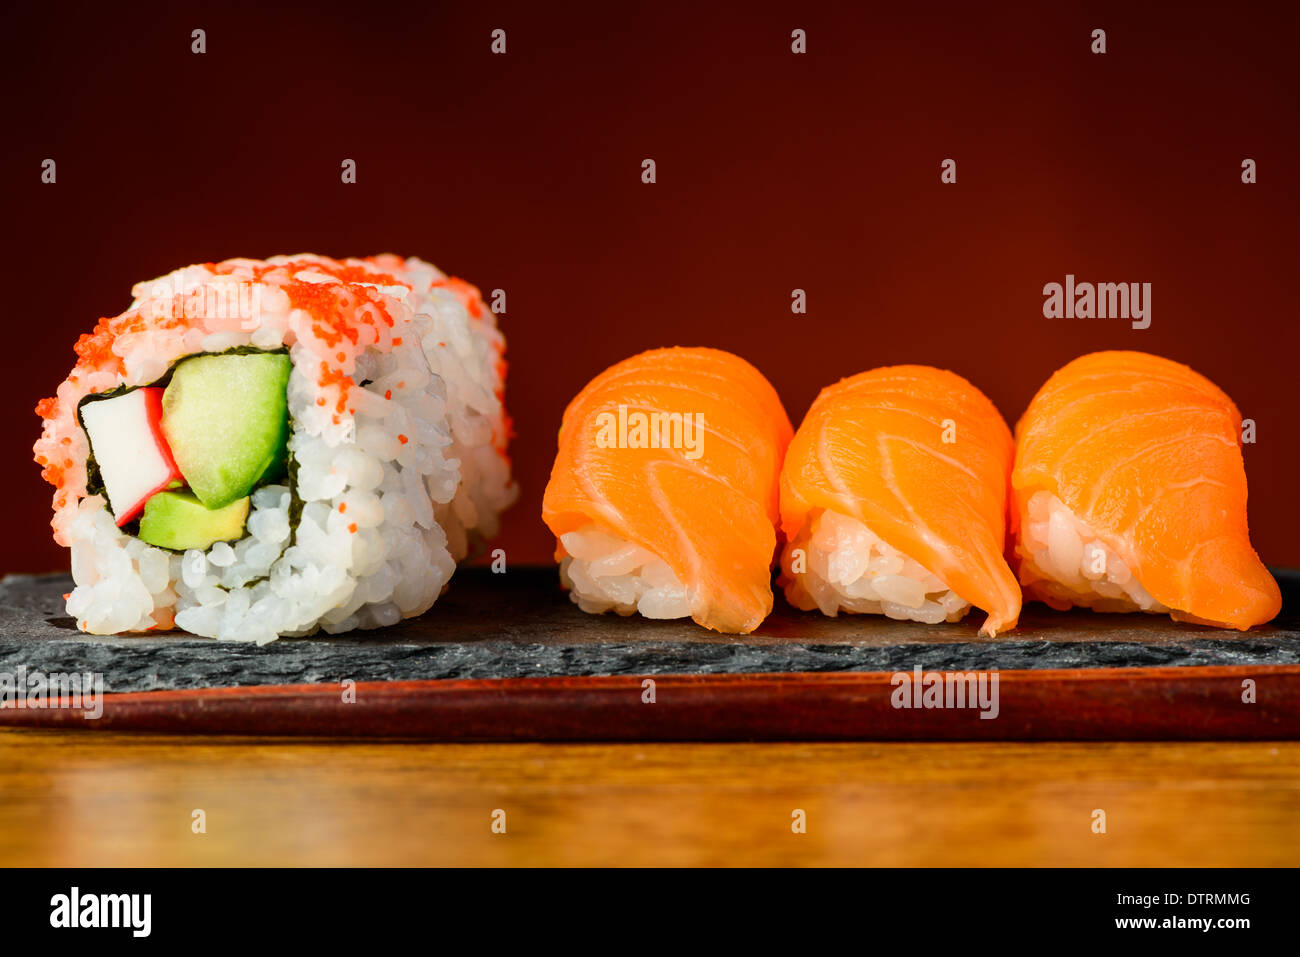 La plaque avec les rouleaux de sushi en Californie et nigiri au saumon Banque D'Images